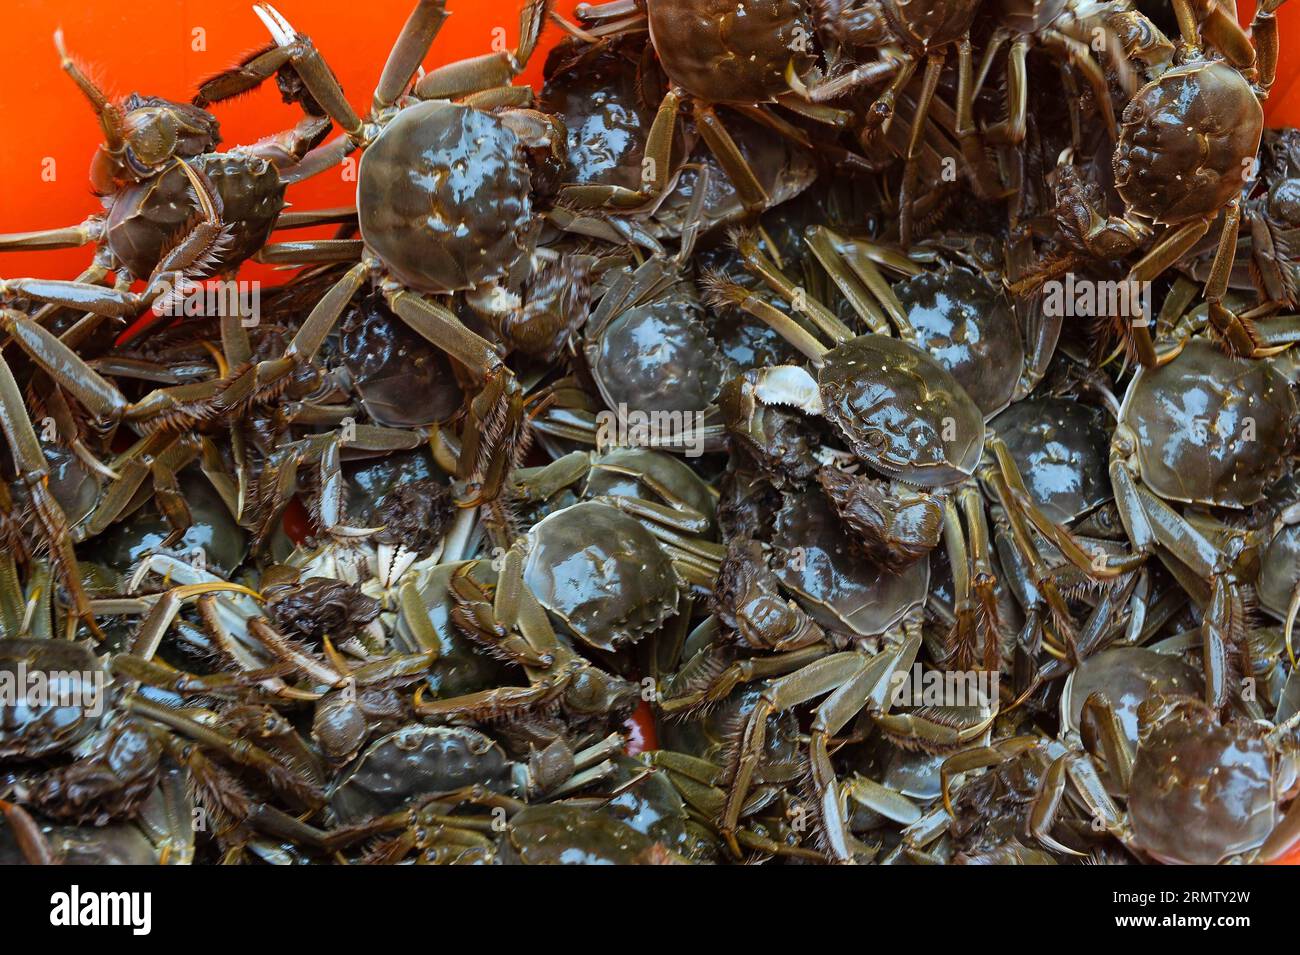 (140923) -- KUNSHAN, 23 septembre 2014 --la photo prise le 23 septembre 2014 montre des crabes chinois à moufles récoltés dans le lac Yangcheng dans la ville de Bacheng à Kunshan, dans la province de Jiangsu, dans l est de la Chine. La saison de récolte 2014 pour le crabe moufle chinois (Eriocheir sinensis) dans le lac Yangcheng, une importante zone productrice, a débuté mardi. Aussi connu comme le grand crabe d'écluse, les crabes chinois à moufles sont favorisés par de nombreux amateurs de gourmets et se vendent bien en ligne et sur les marchés réels ) (wjq) CHINE-JIANGSU-FISHERY-YANGCHENG LAC-PÊCHE CHINOIS-RÉCOLTE DE MOUFLES (CN) LixXiang PUBLICATIONxNOTxINxCHN Kunshan sept 23 2014 Ph Banque D'Images